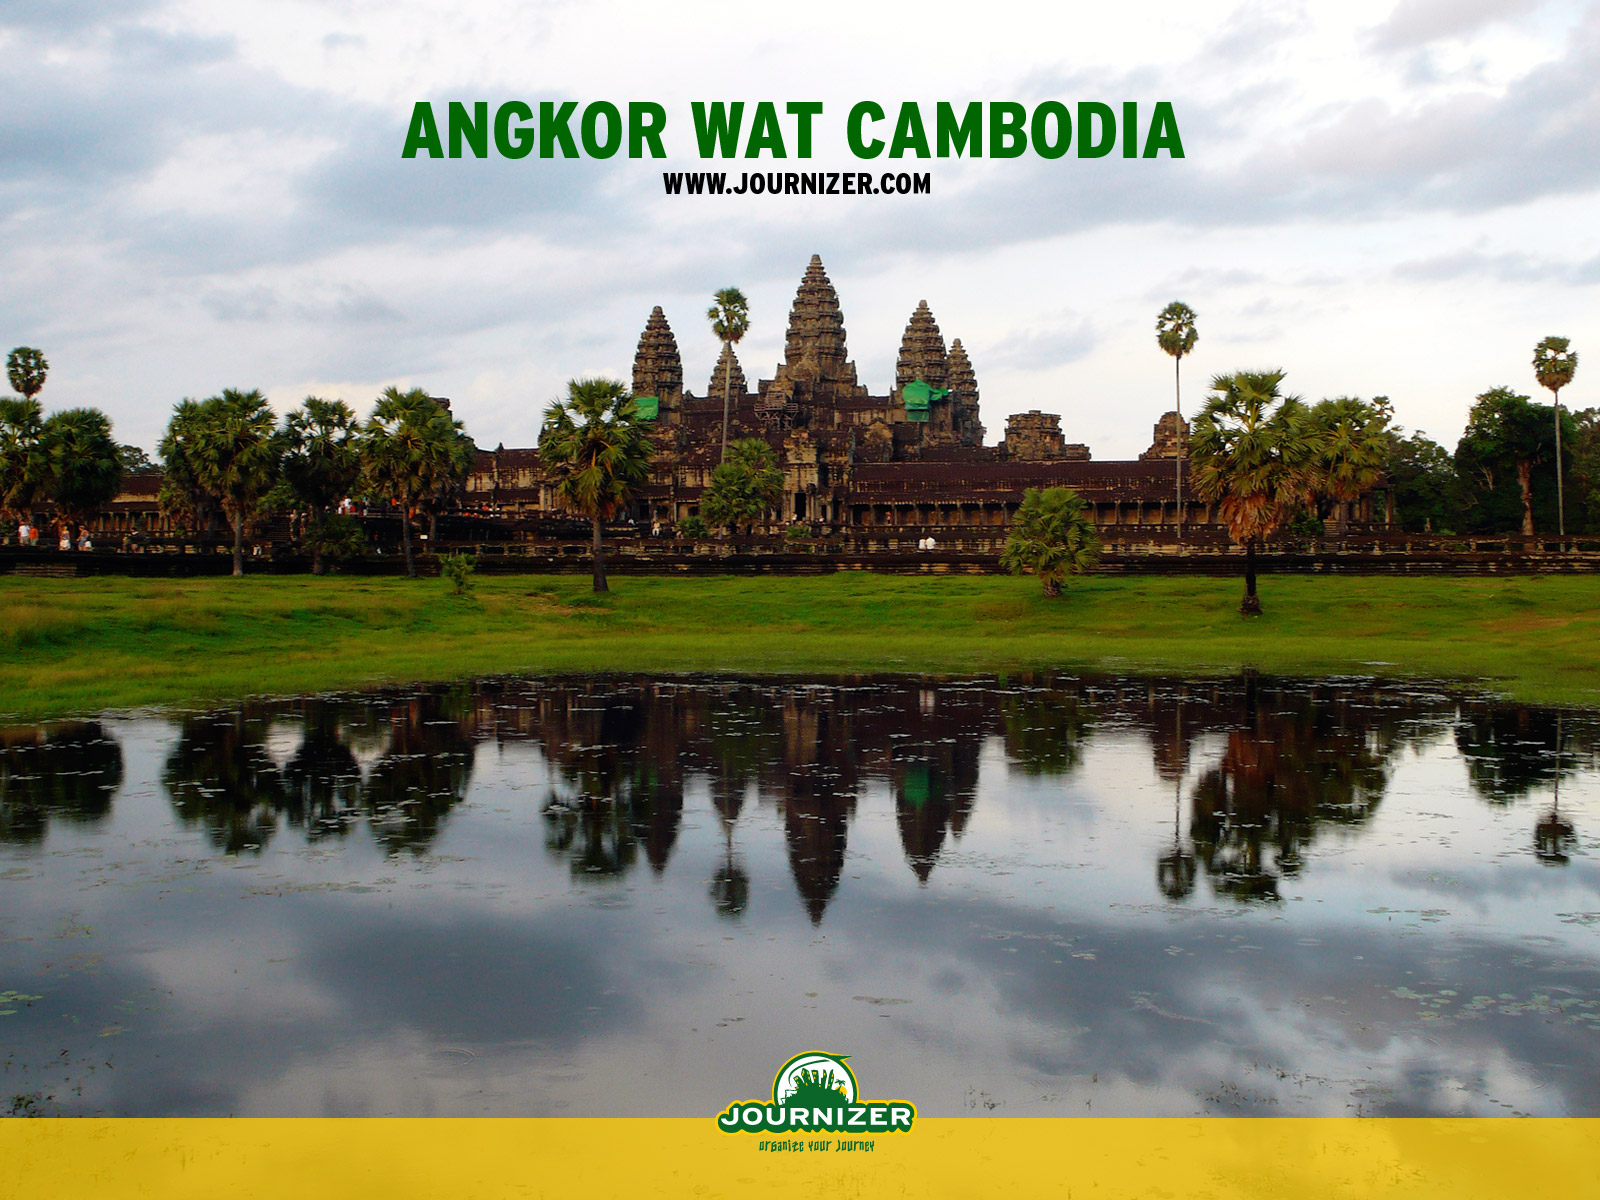 Angkor Wat Wallpaper Stock Photos